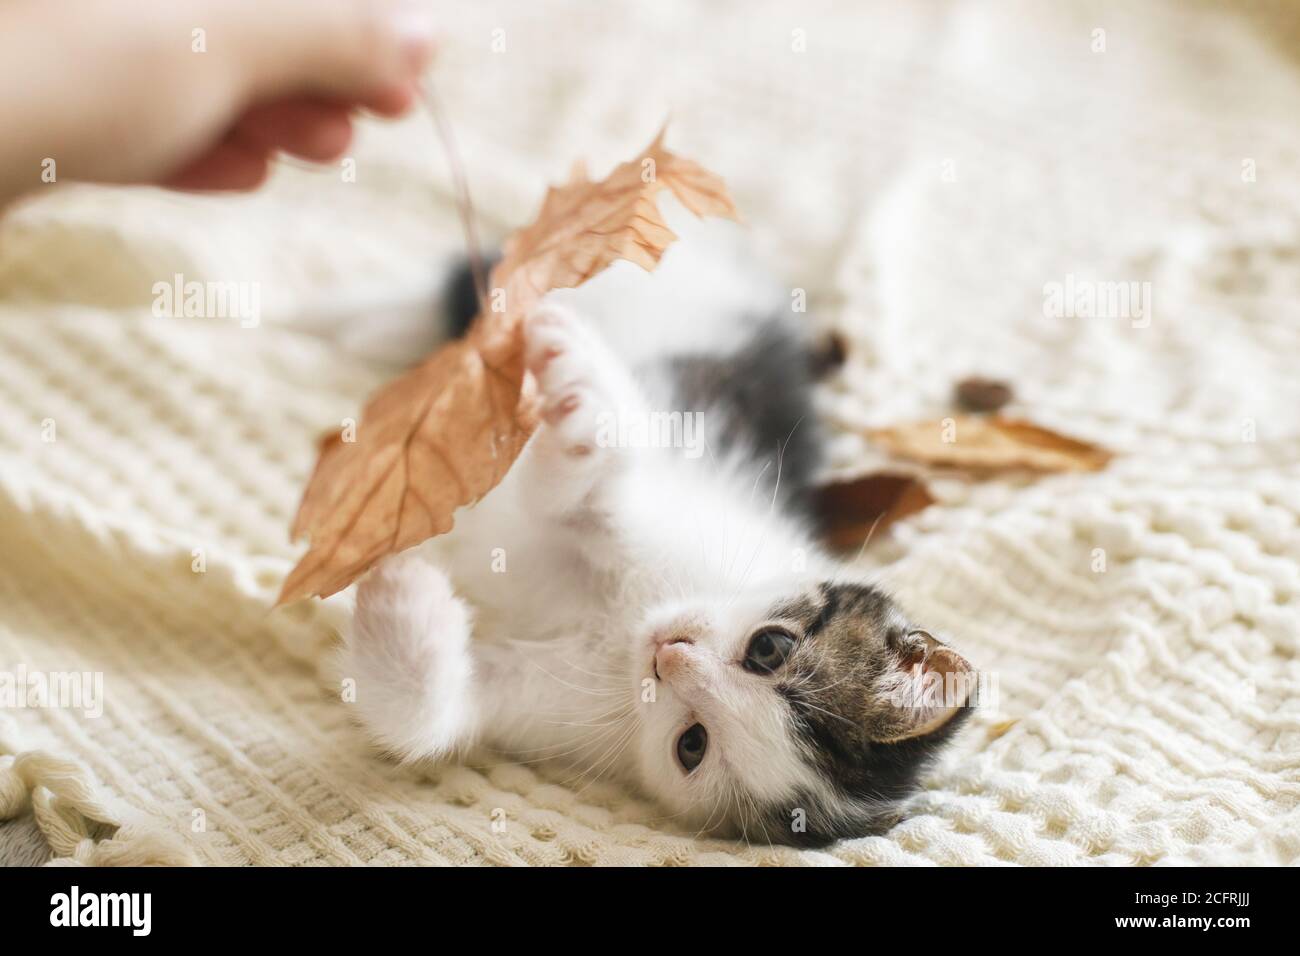 Adorable gatito jugando con hojas de otoño sobre una manta suave. Mano sosteniendo la hoja de otoño y jugando con cute gatito blanco y gris en la cama en la habitación. Otoño c Foto de stock